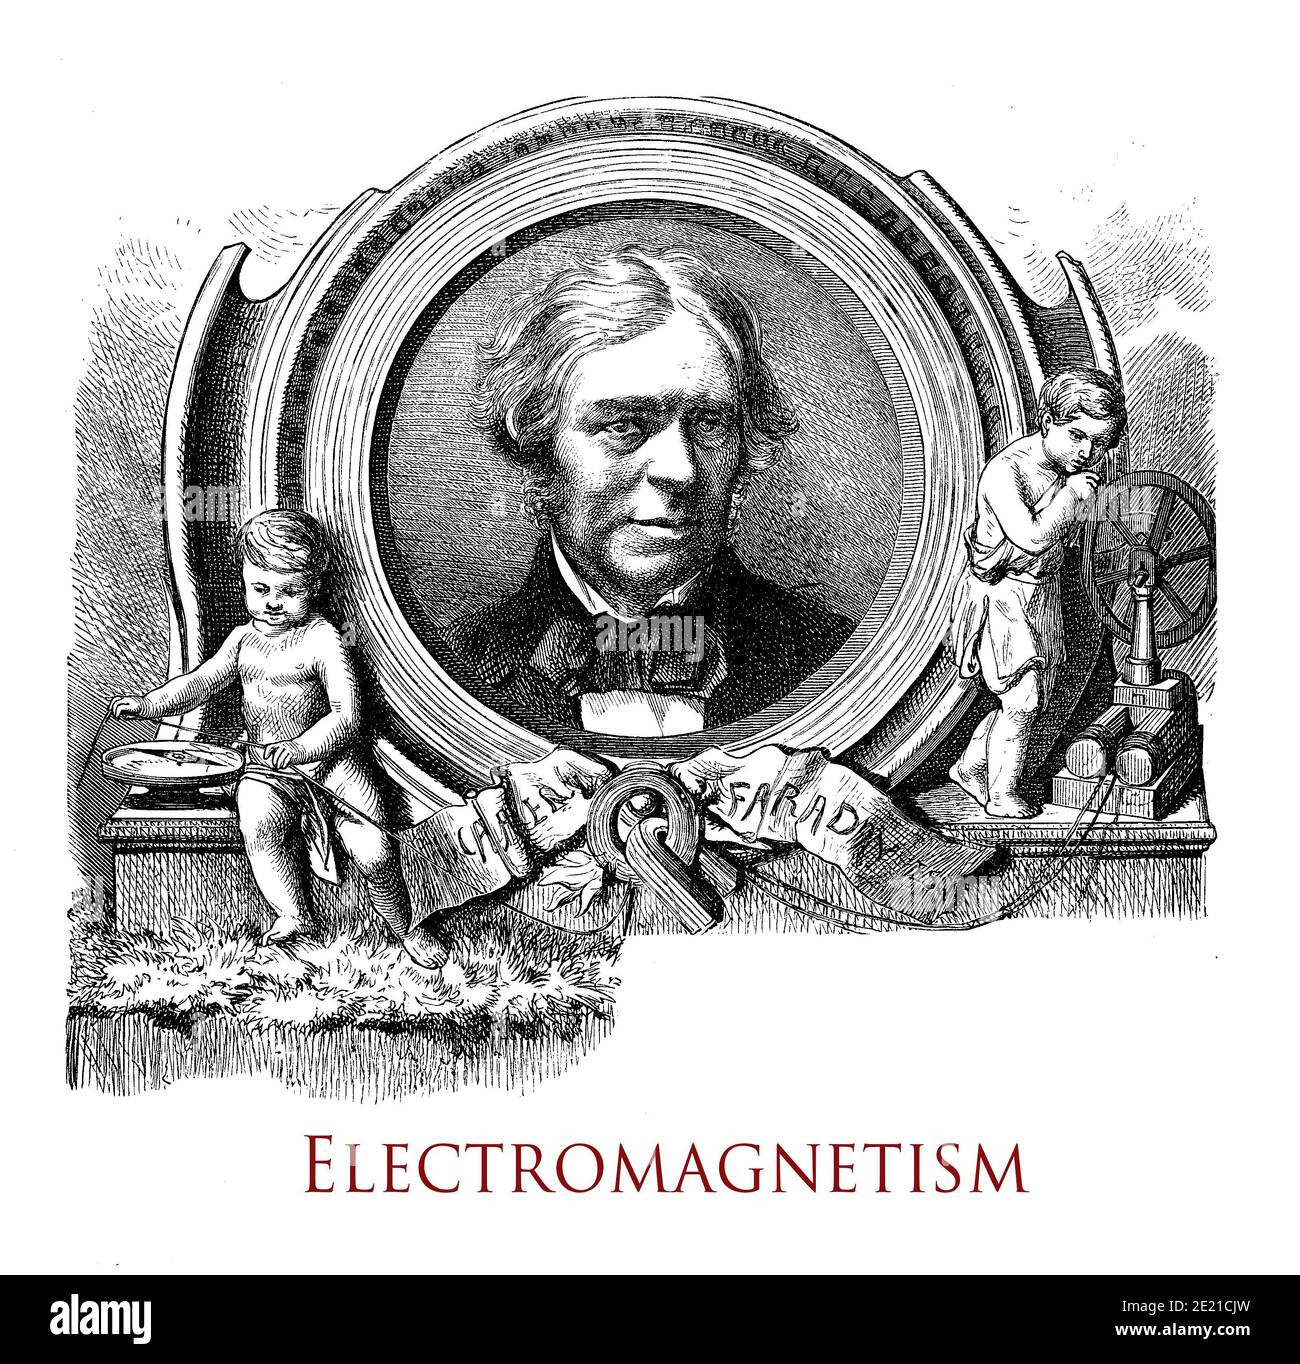 Bel capitolo tipografico vintage sull'elettromagnetismo decorato dal ritratto di Micheal Faraday, scienziato che studiò il collegamento tra elettricità e magnetismo Foto Stock